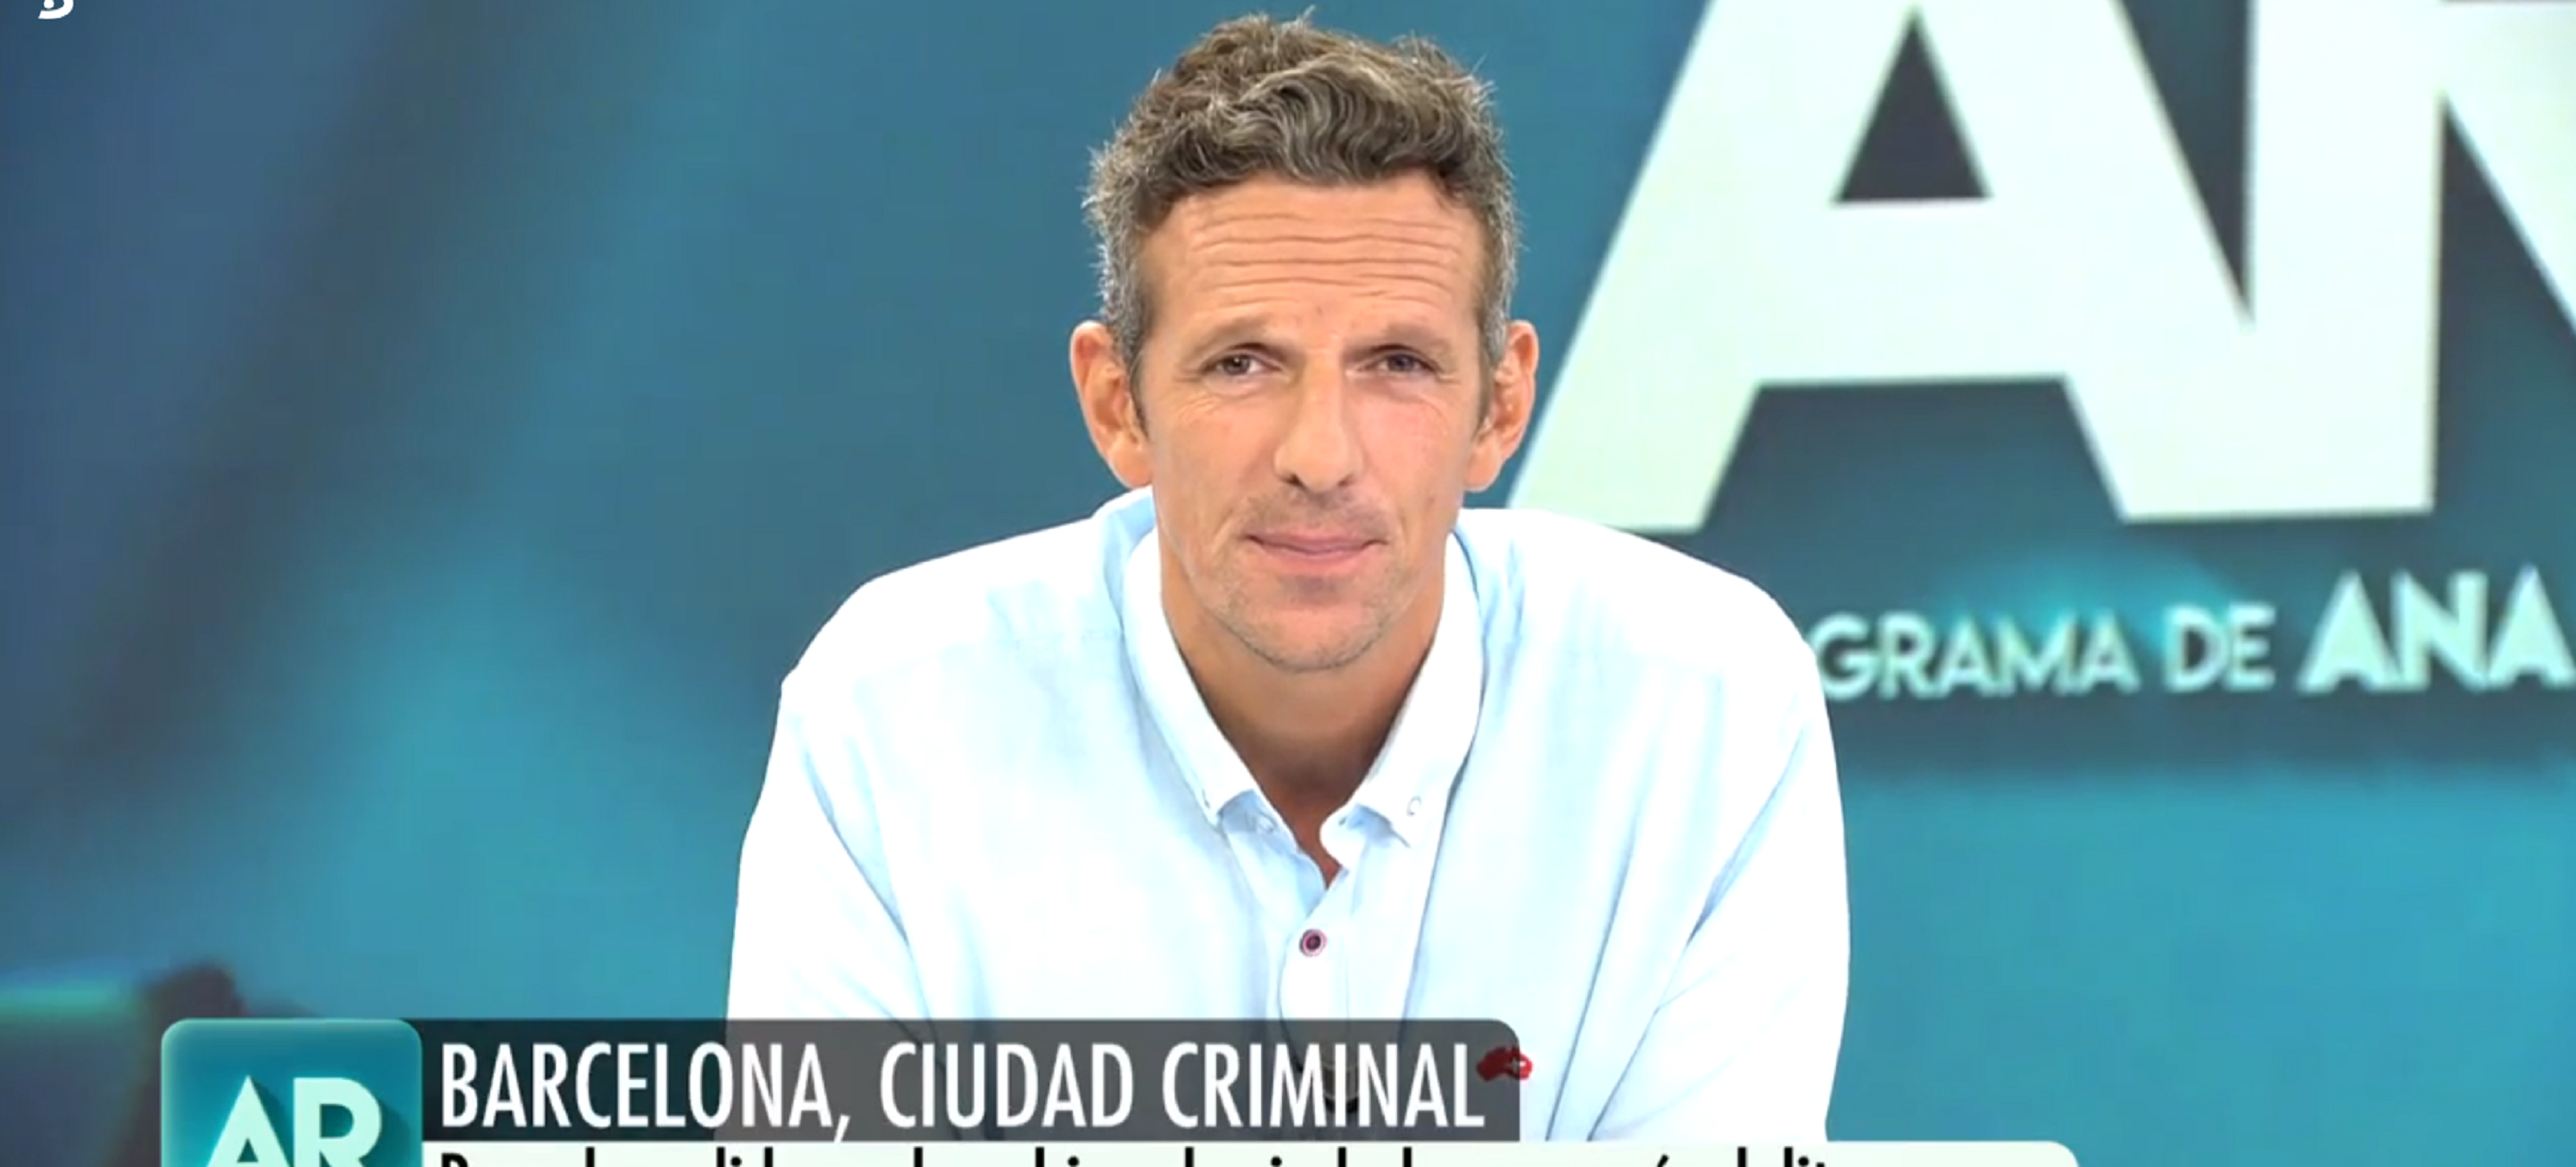 Ana Rosa culpa de la delincuencia al procés: "Barcelona, ciudad criminal"